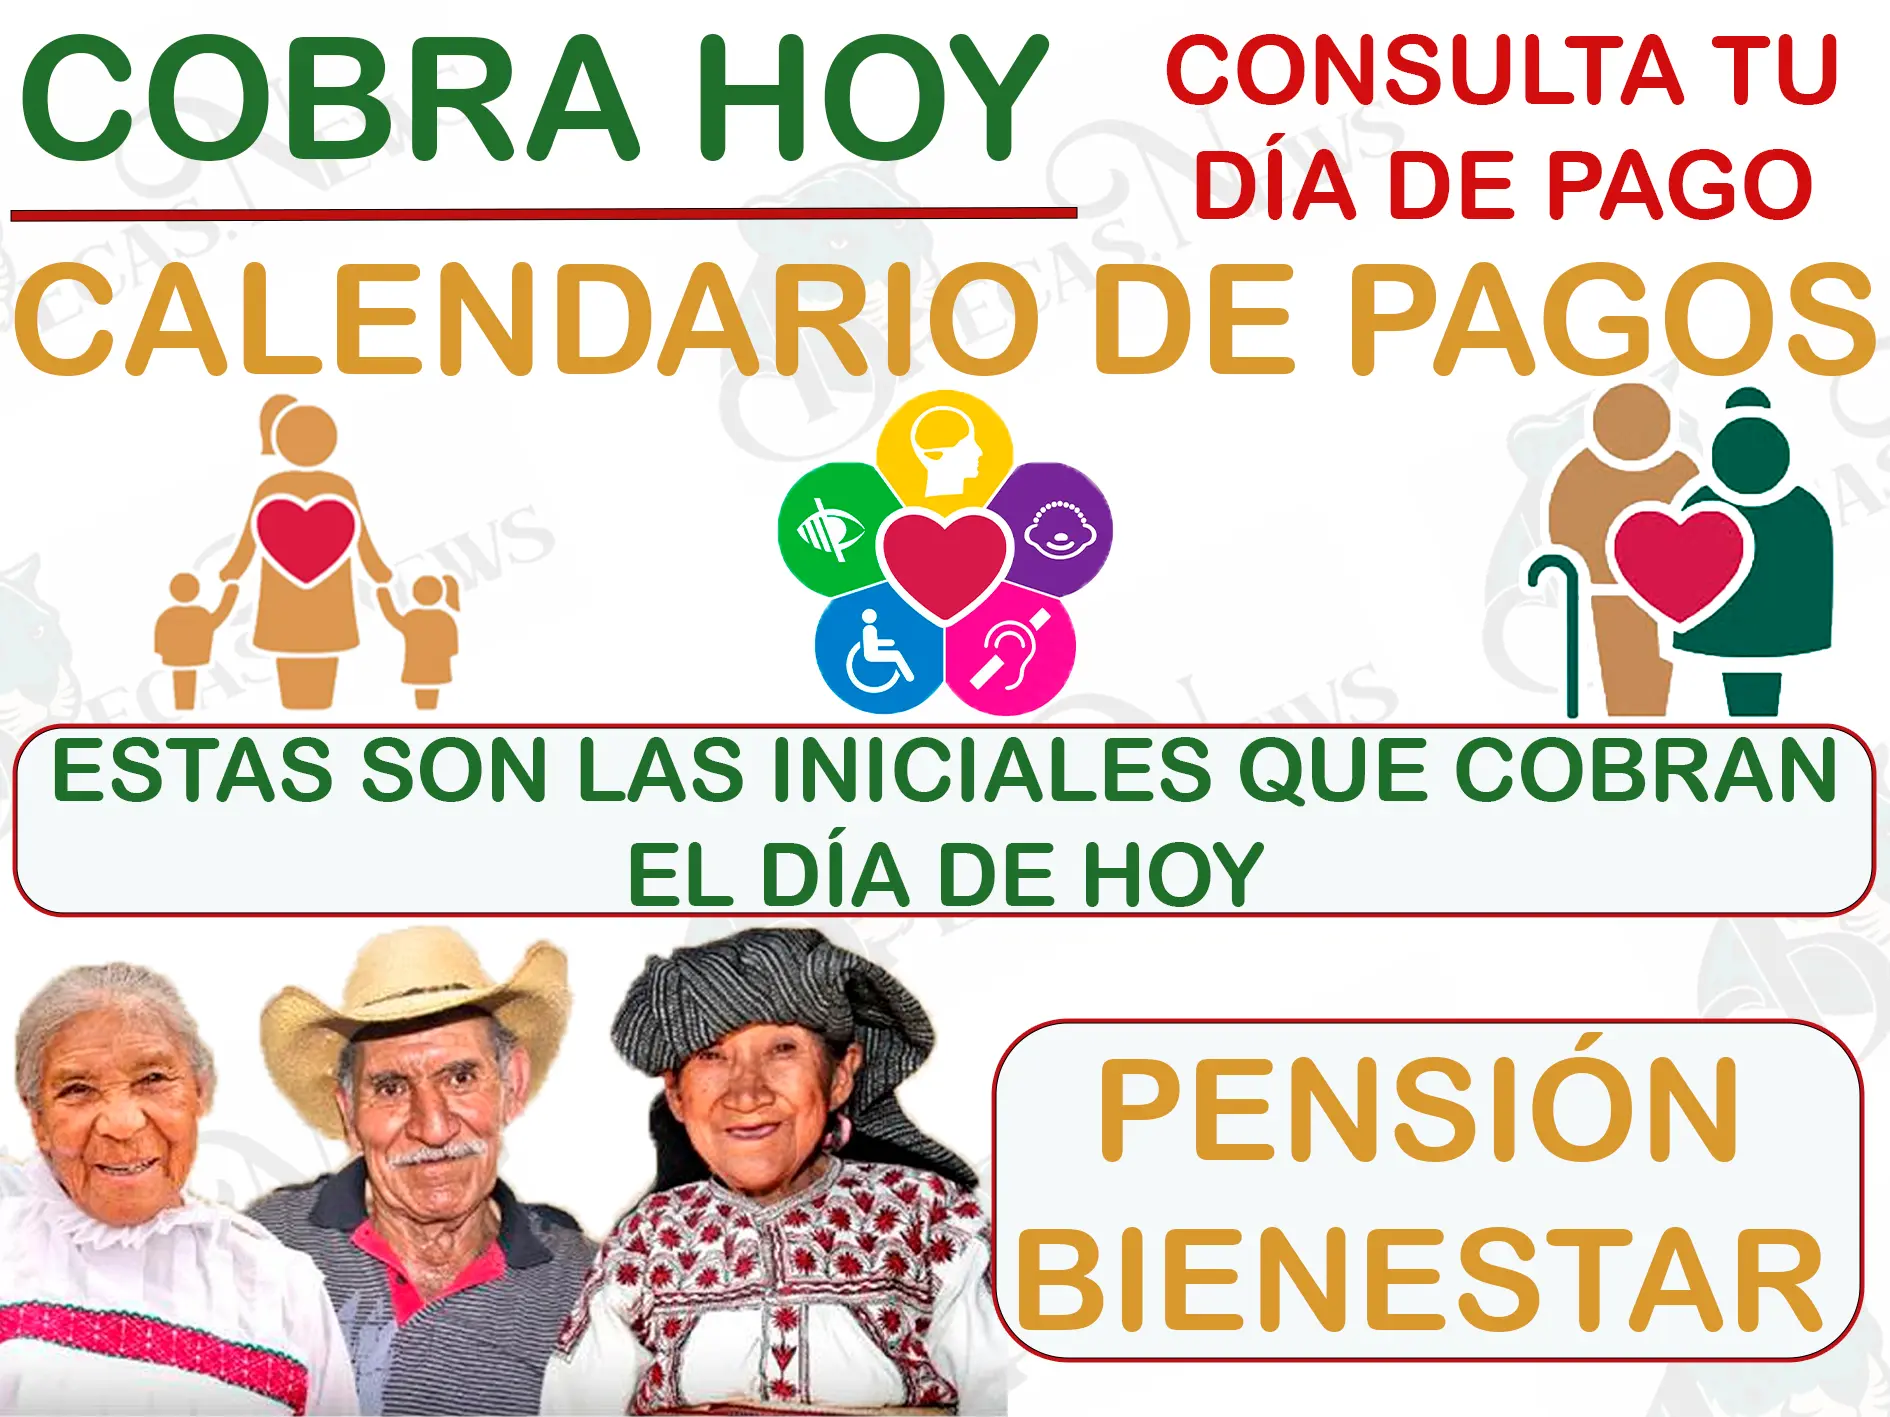 Consulta el calendario de pagos y cobra $ 6,000 pesos el día de hoy: Pensión Bienestar